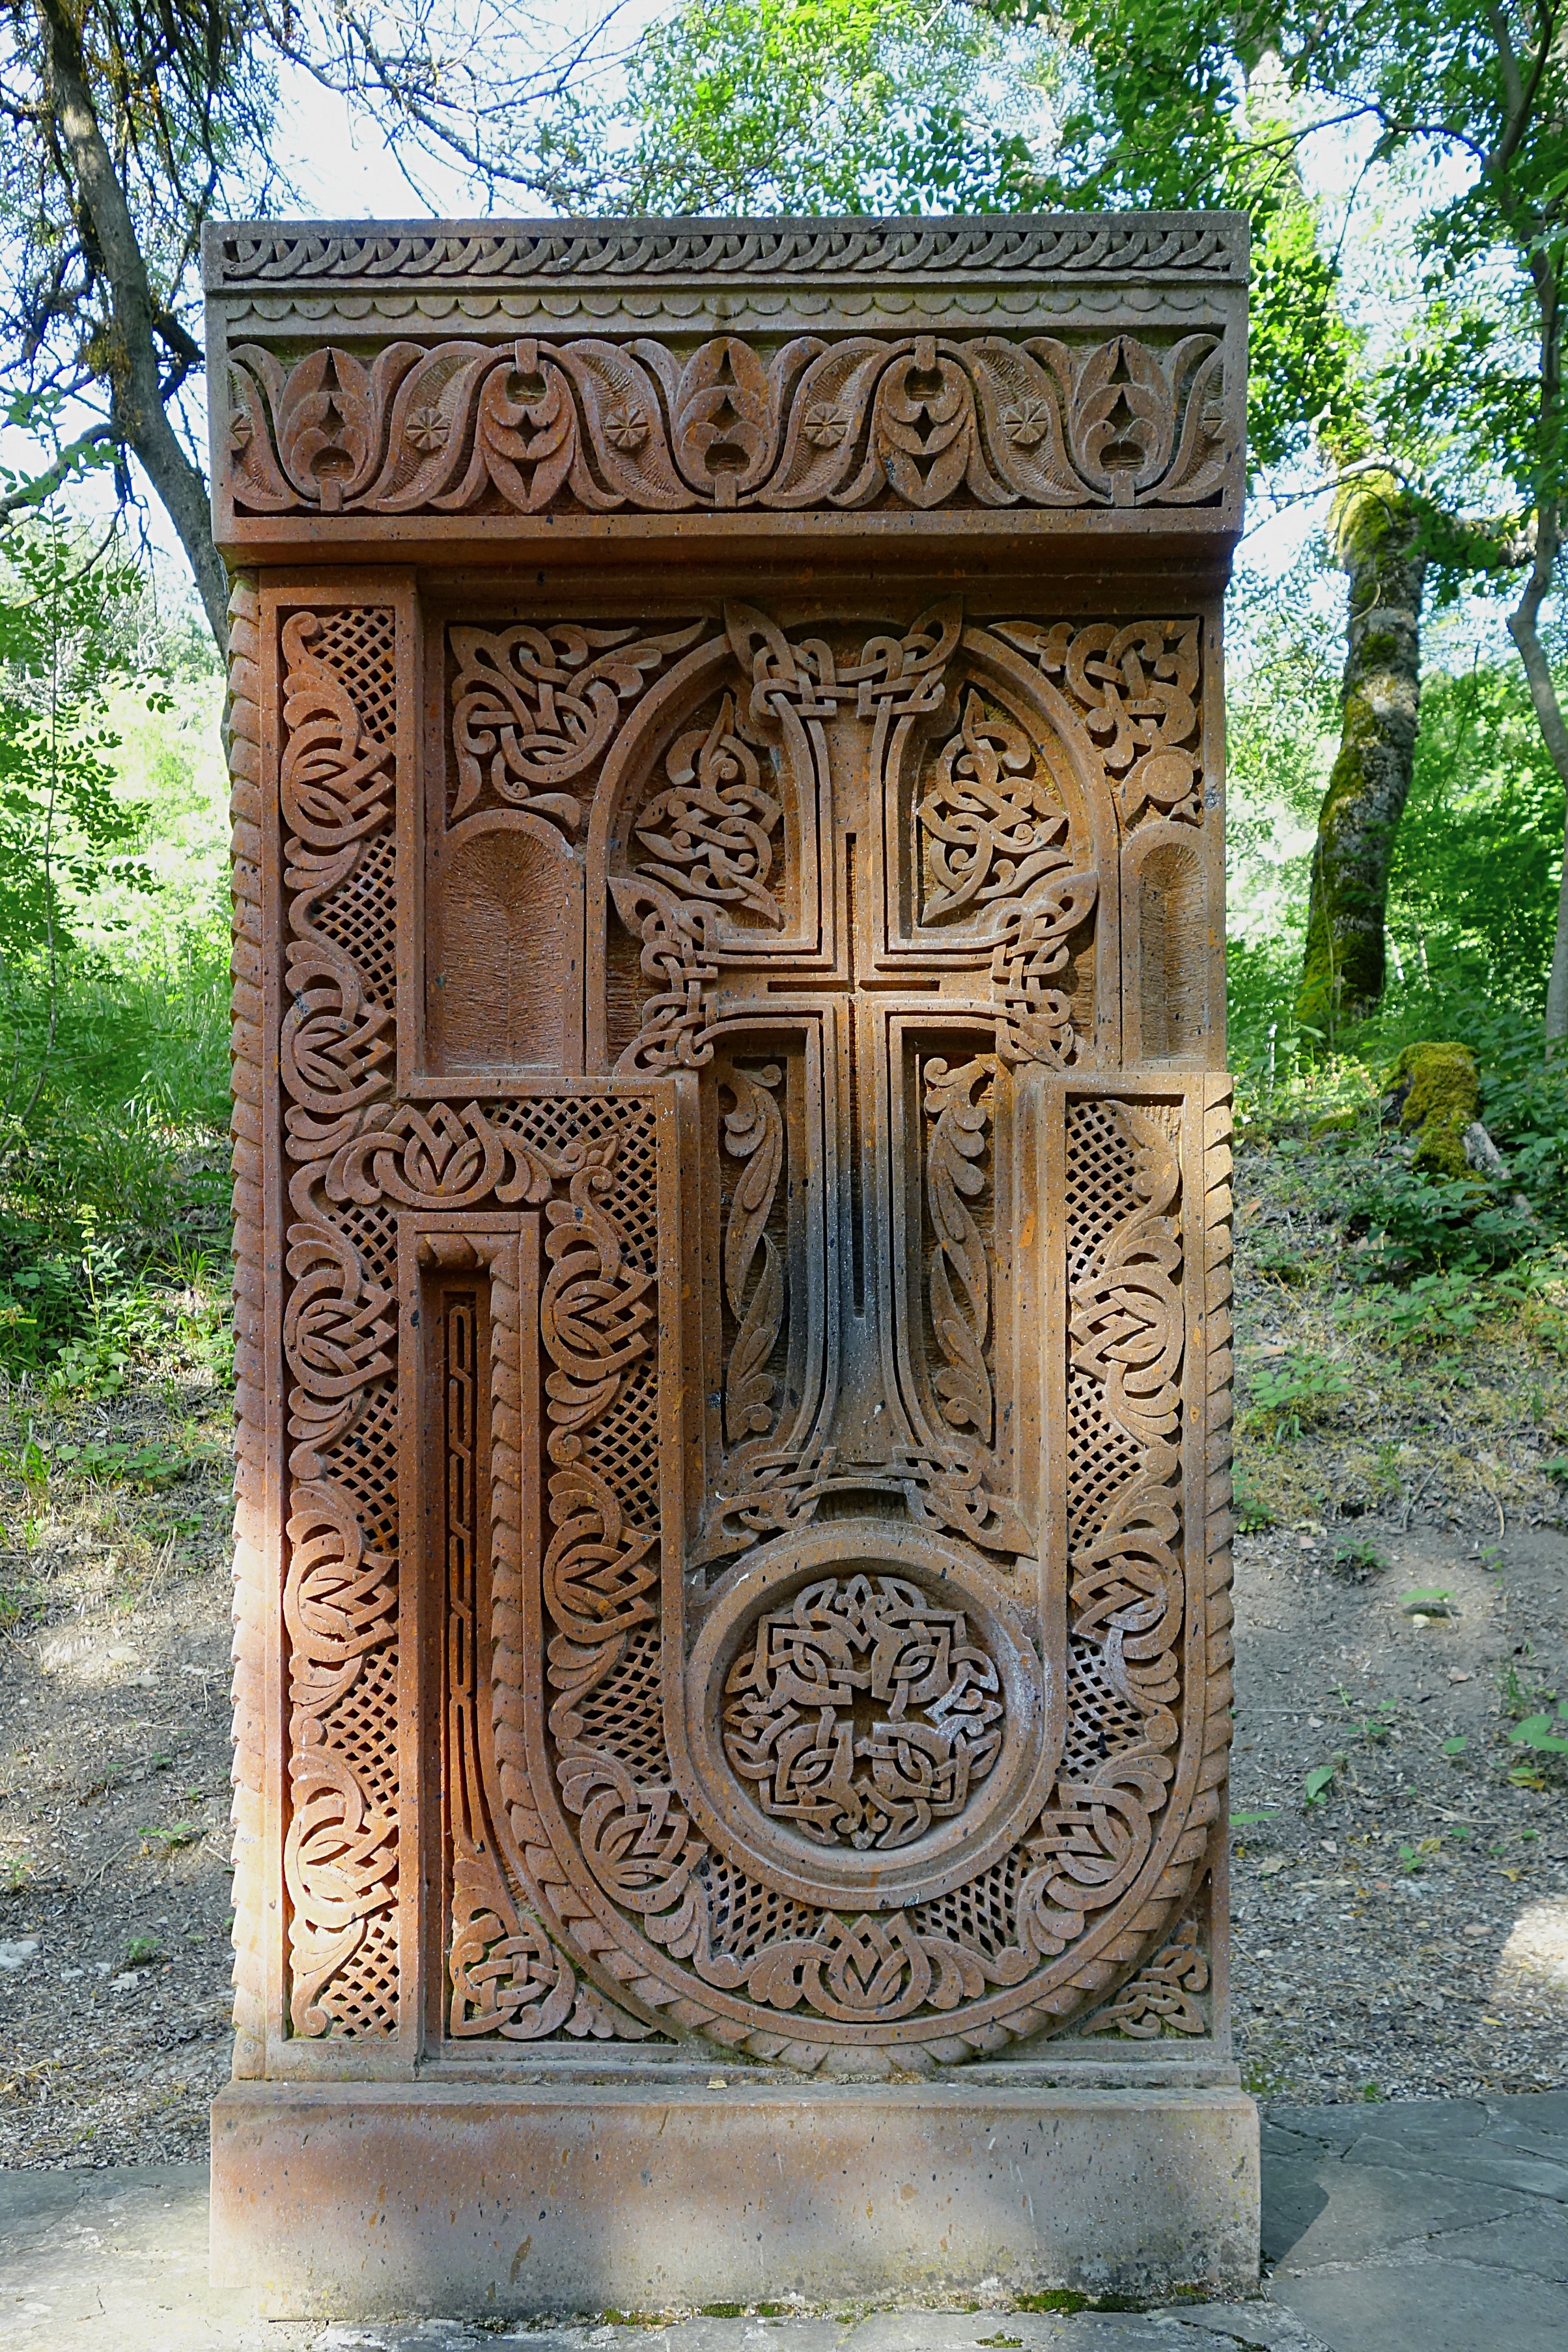 Резная каменная плита возле армянского монастыря. Фото Морошкина В.В.